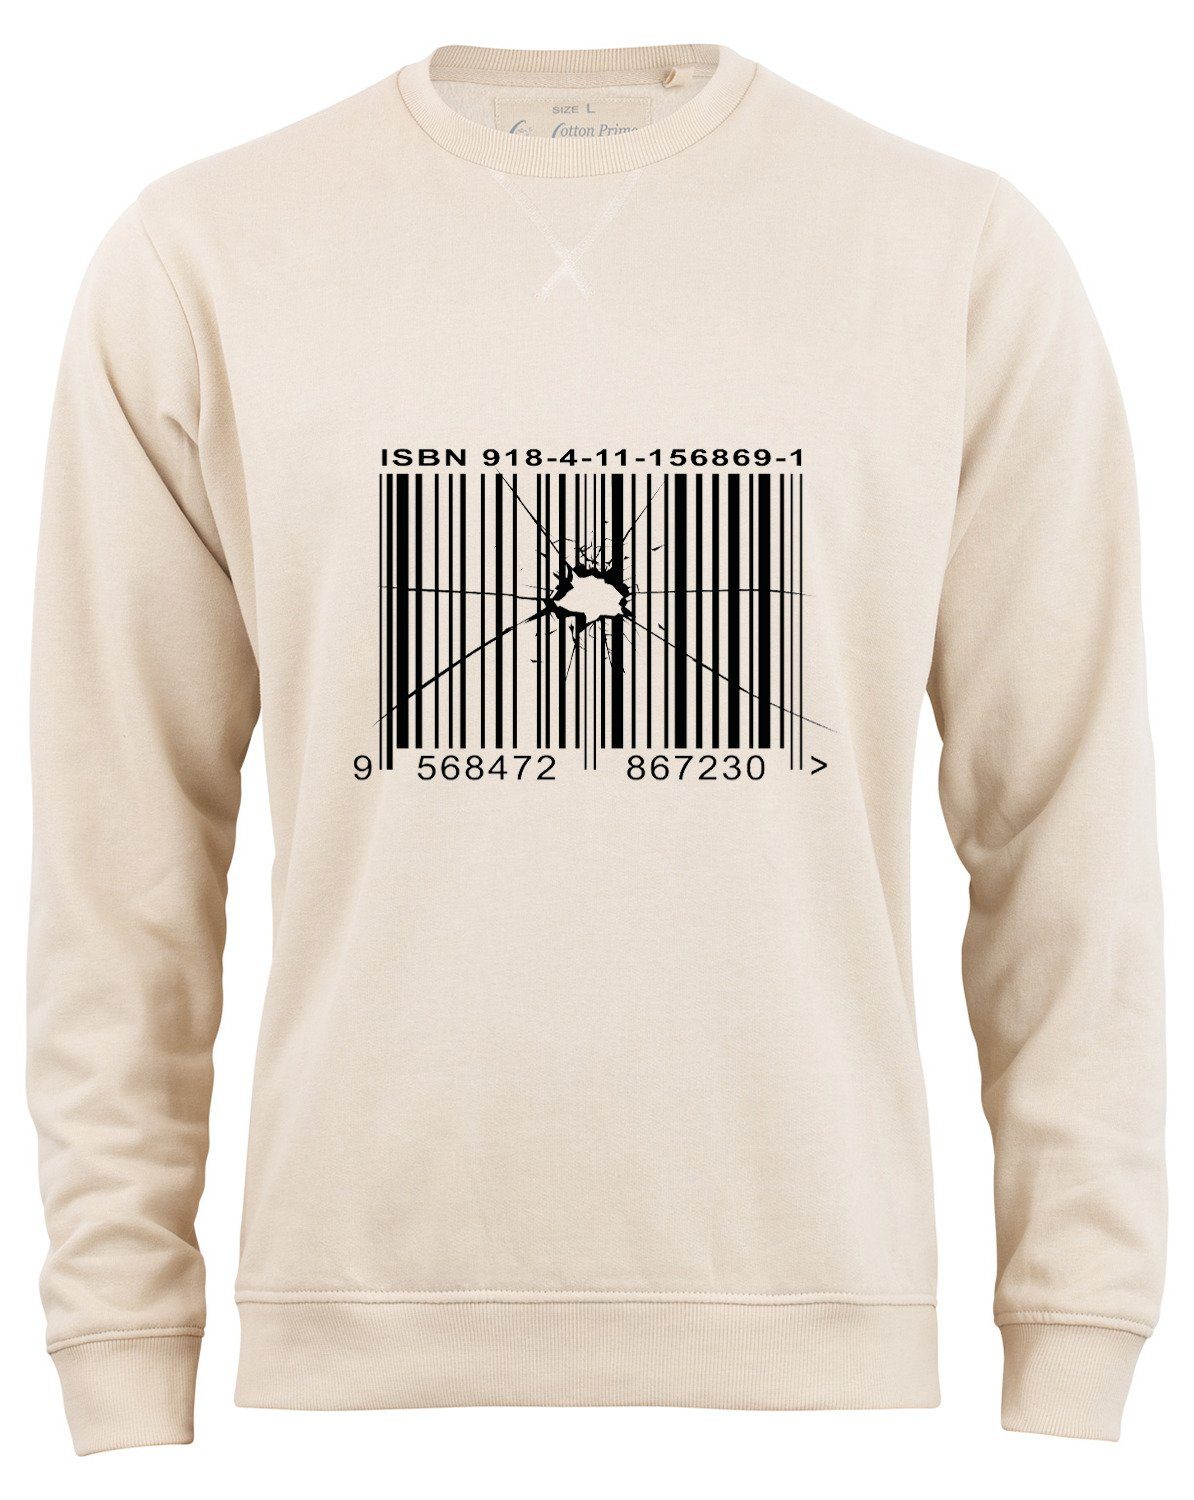 Cotton Prime® Sweatshirt of Beige Barcode Order Innenfleece weichem - mit Out